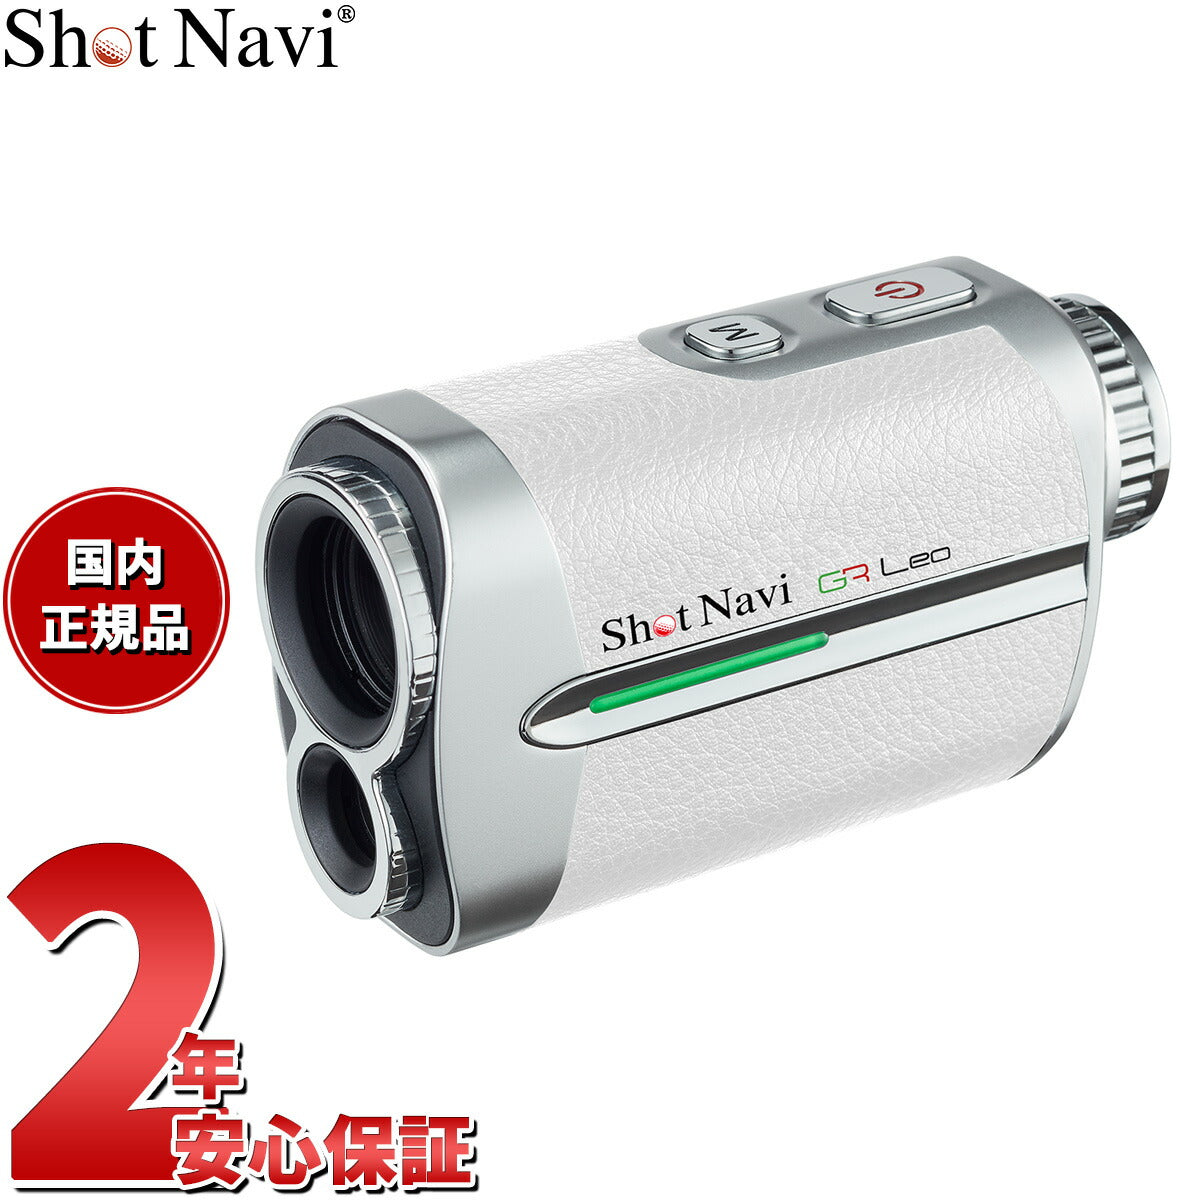 ショットナビ Shot Navi ボイスレーザー GRレオ Voice Laser GR Leo ゴルフ レーザー 距離測定器 距離計測器 ホワイト